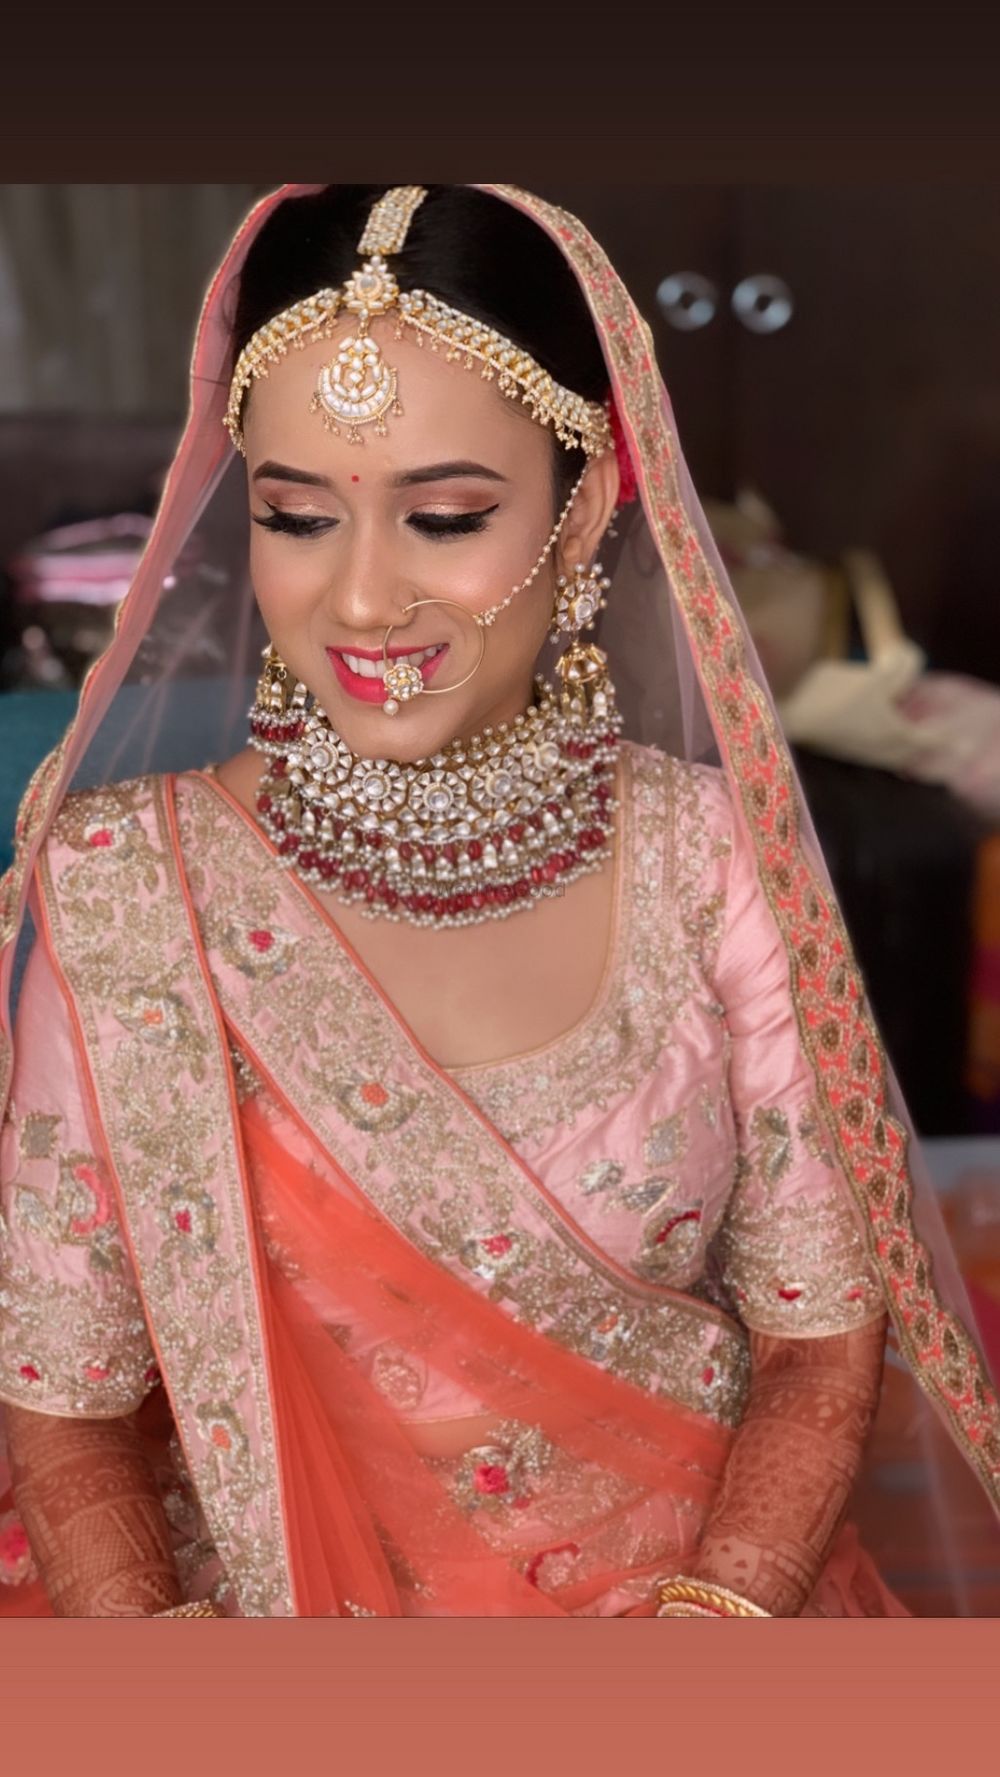 Photo From Brides by Ayushi Jain - By Makeup Hair By Ayushi Jain